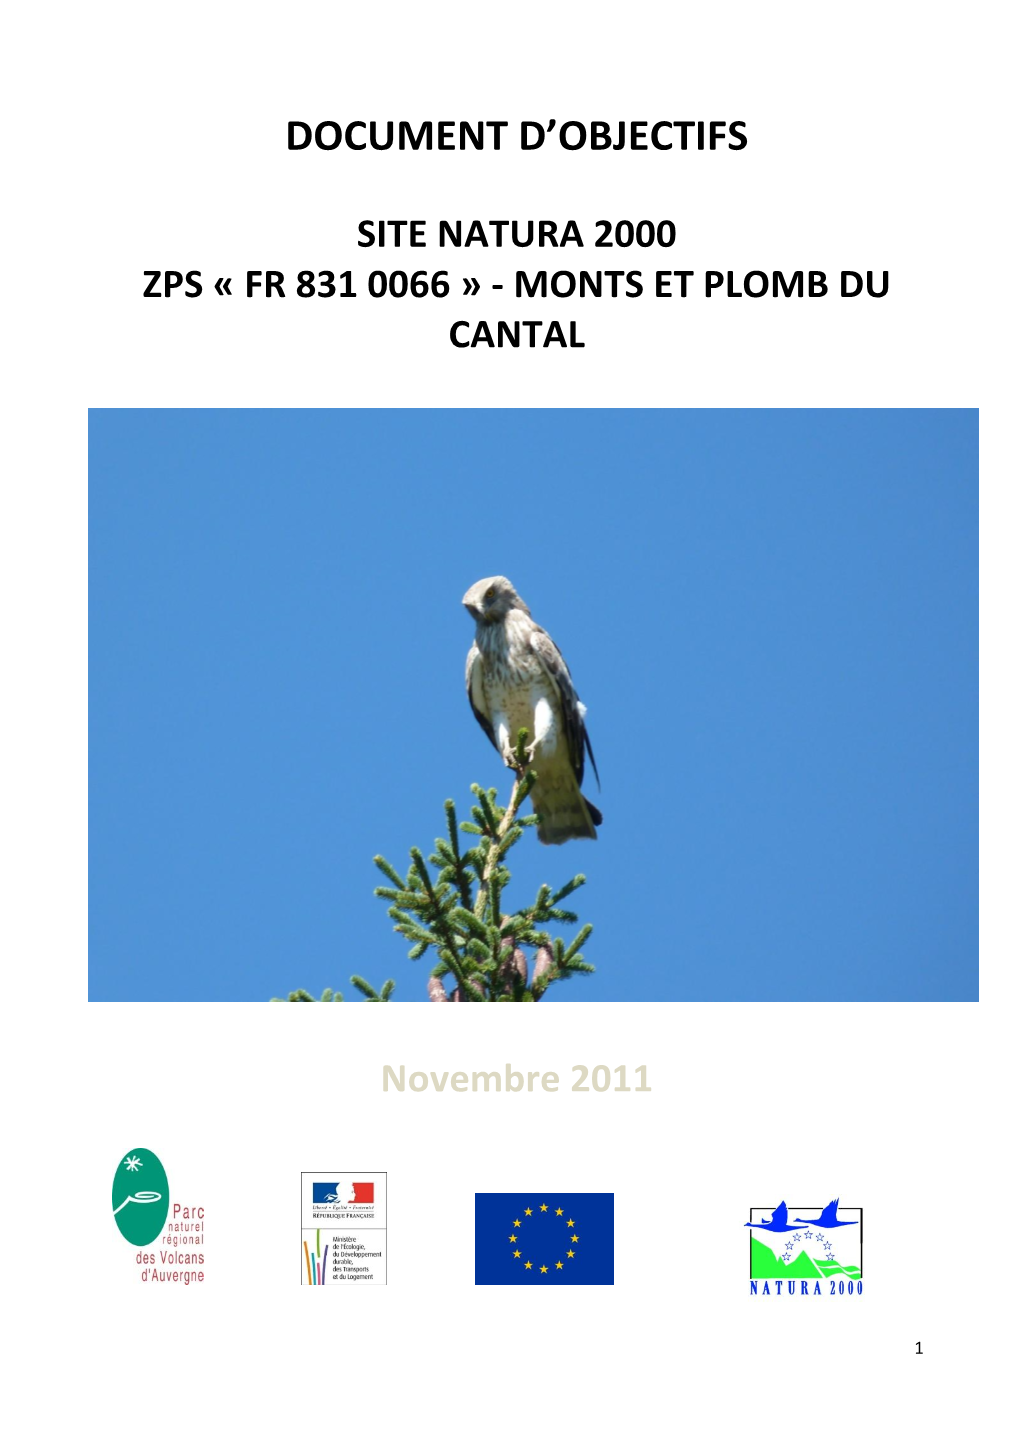 Site Natura 2000 Zps « Fr 831 0066 » - Monts Et Plomb Du Cantal